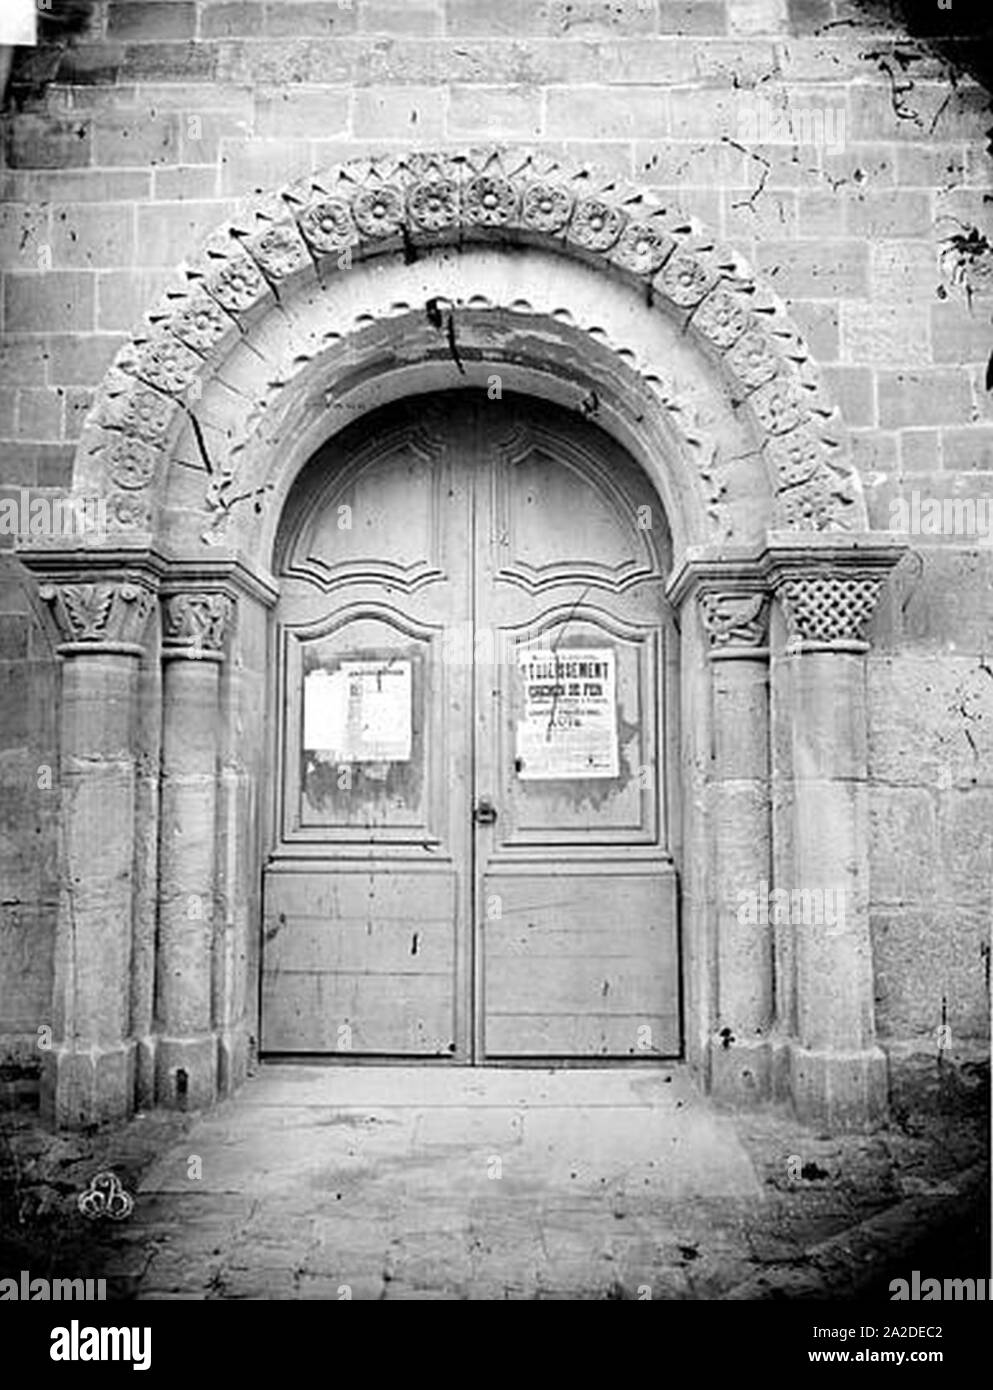 Eglise - Portail - Saint-Ouen-l'Aumône - Médiathèque de l'architecture et du patrimoine - Stock Photo